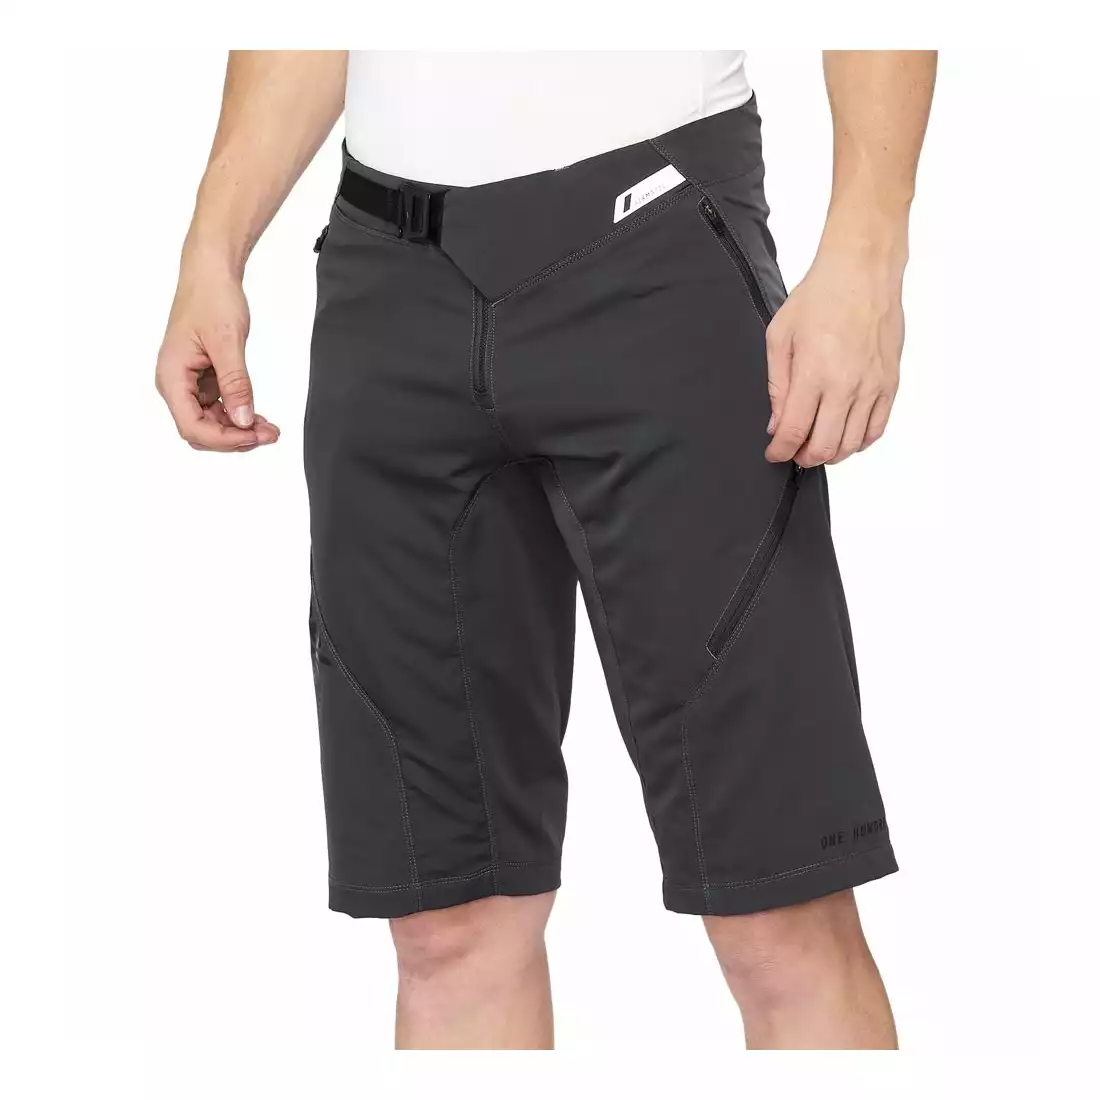 100% AIRMATIC Men's cycling shorts, gray